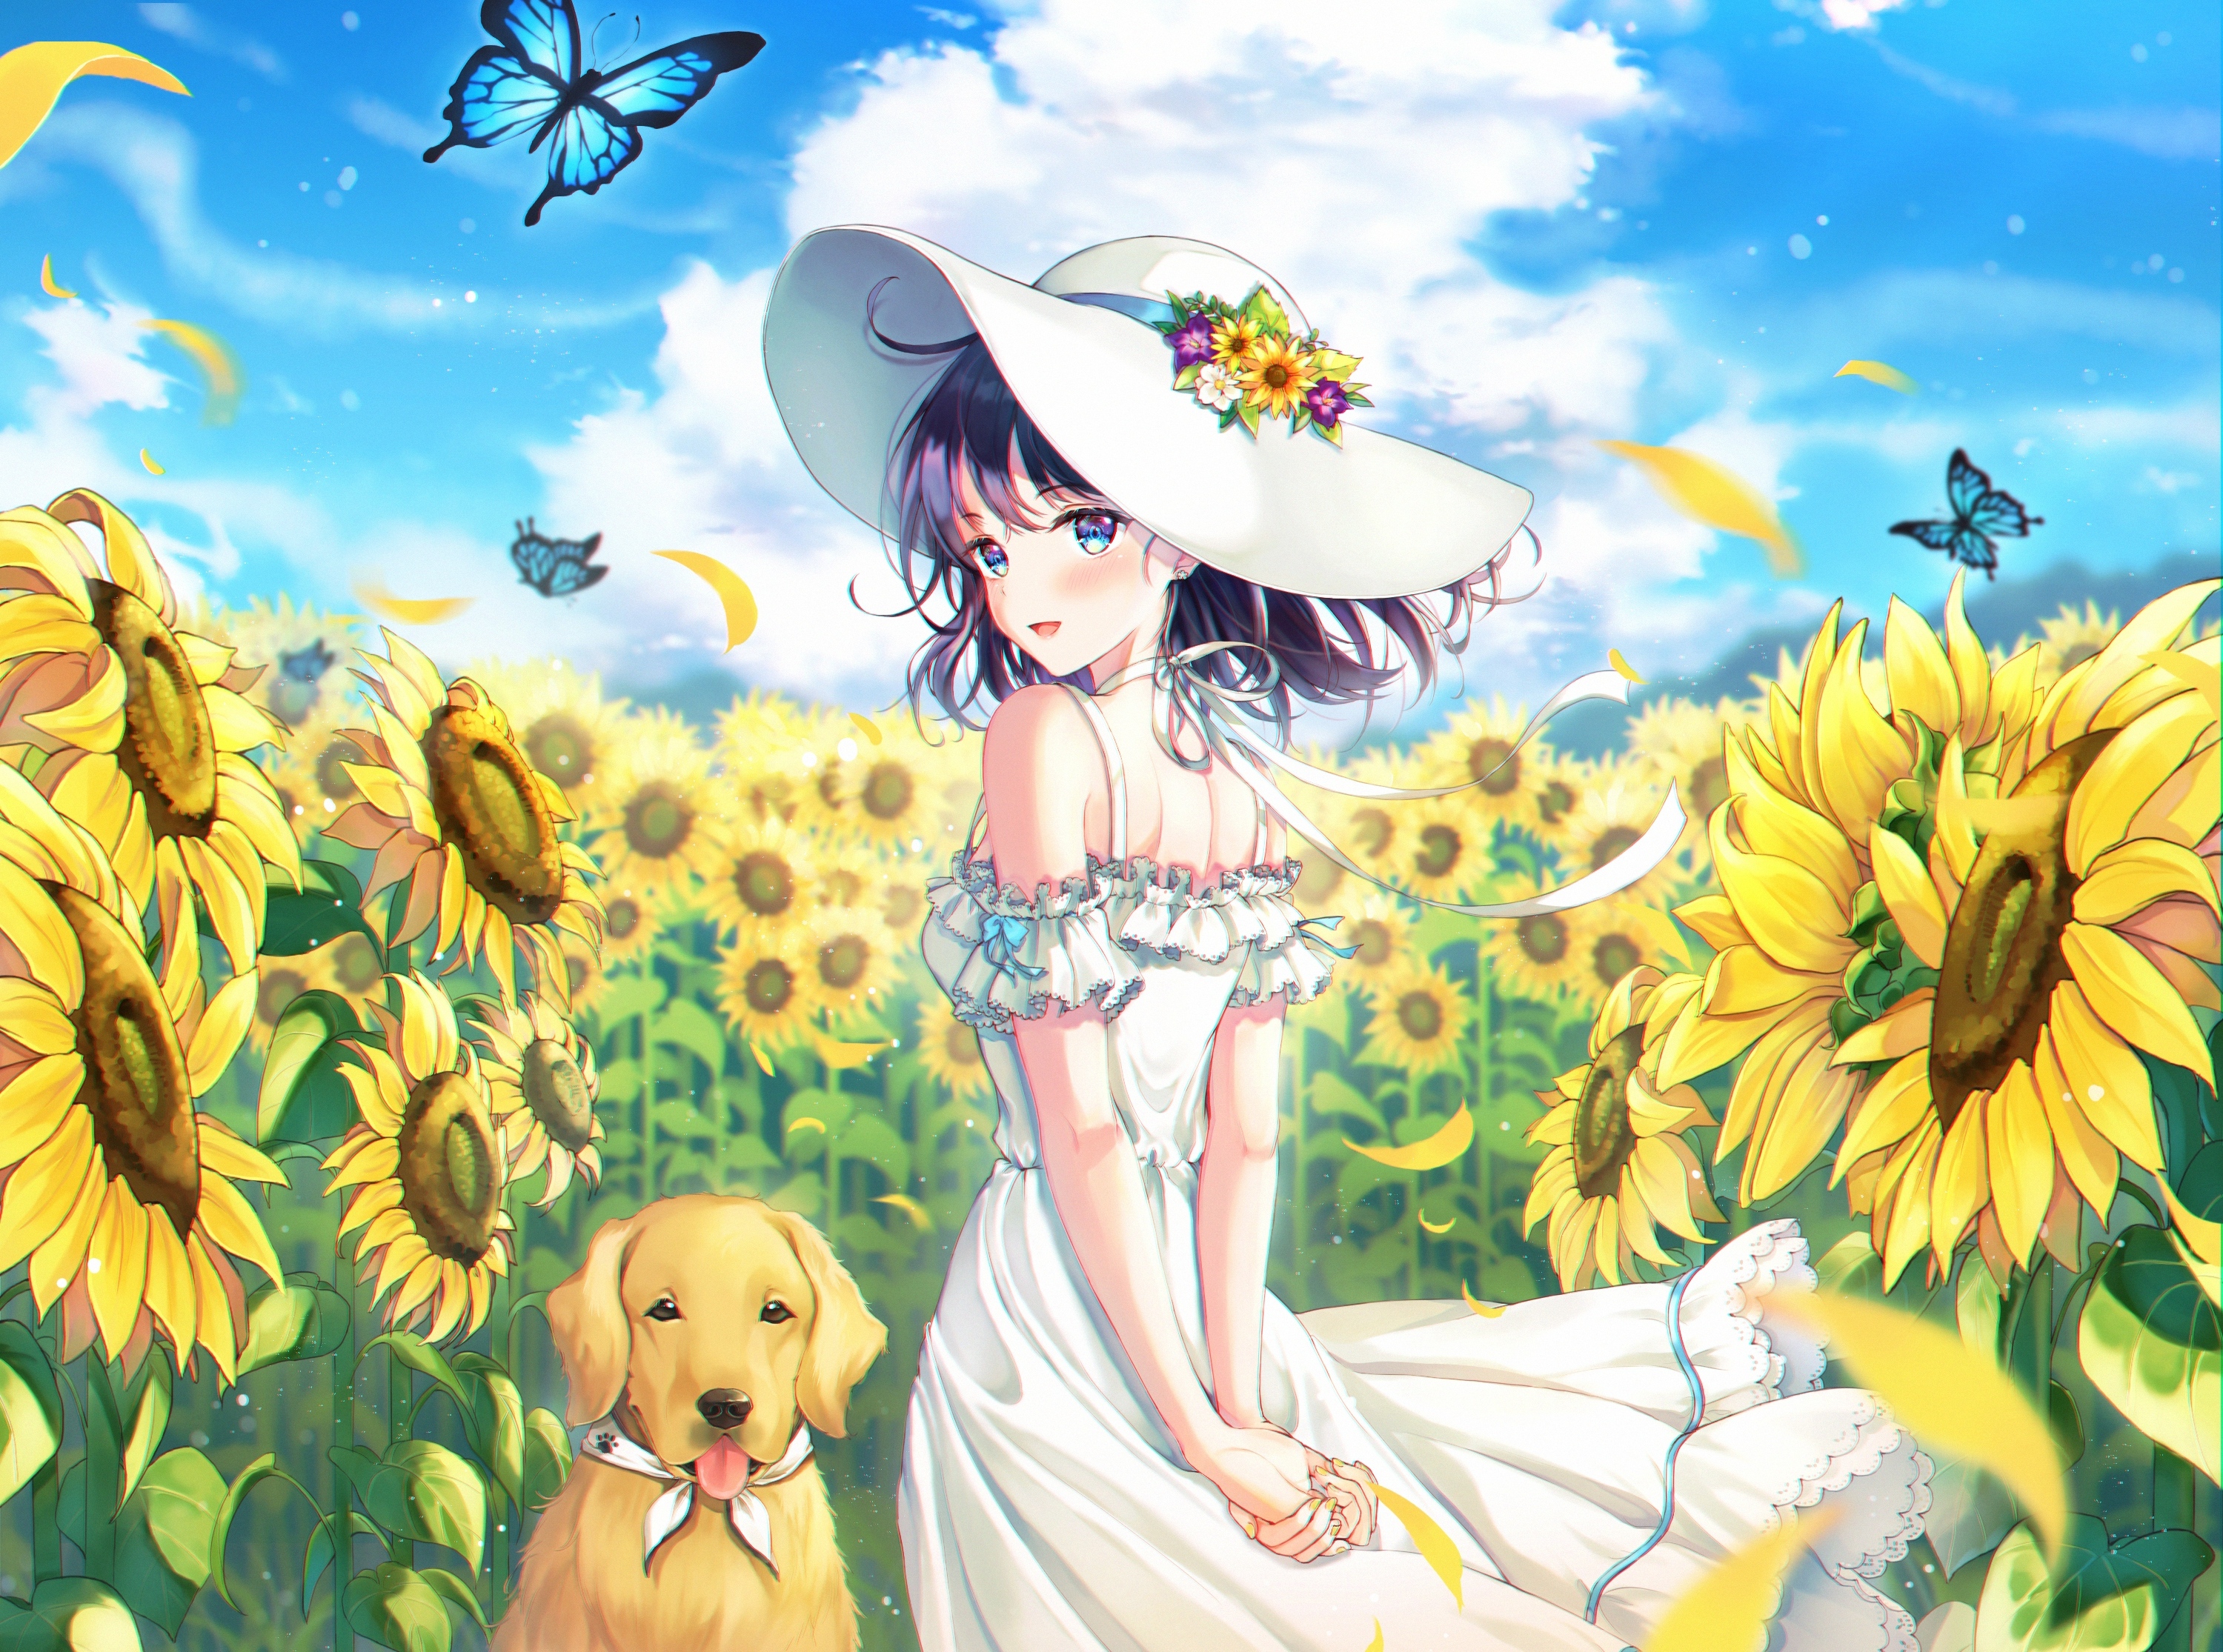 Wallpaper Summer Dress, Anime Girl, Sunflower Field, Butterfly, Hat, Dog:3000x2230